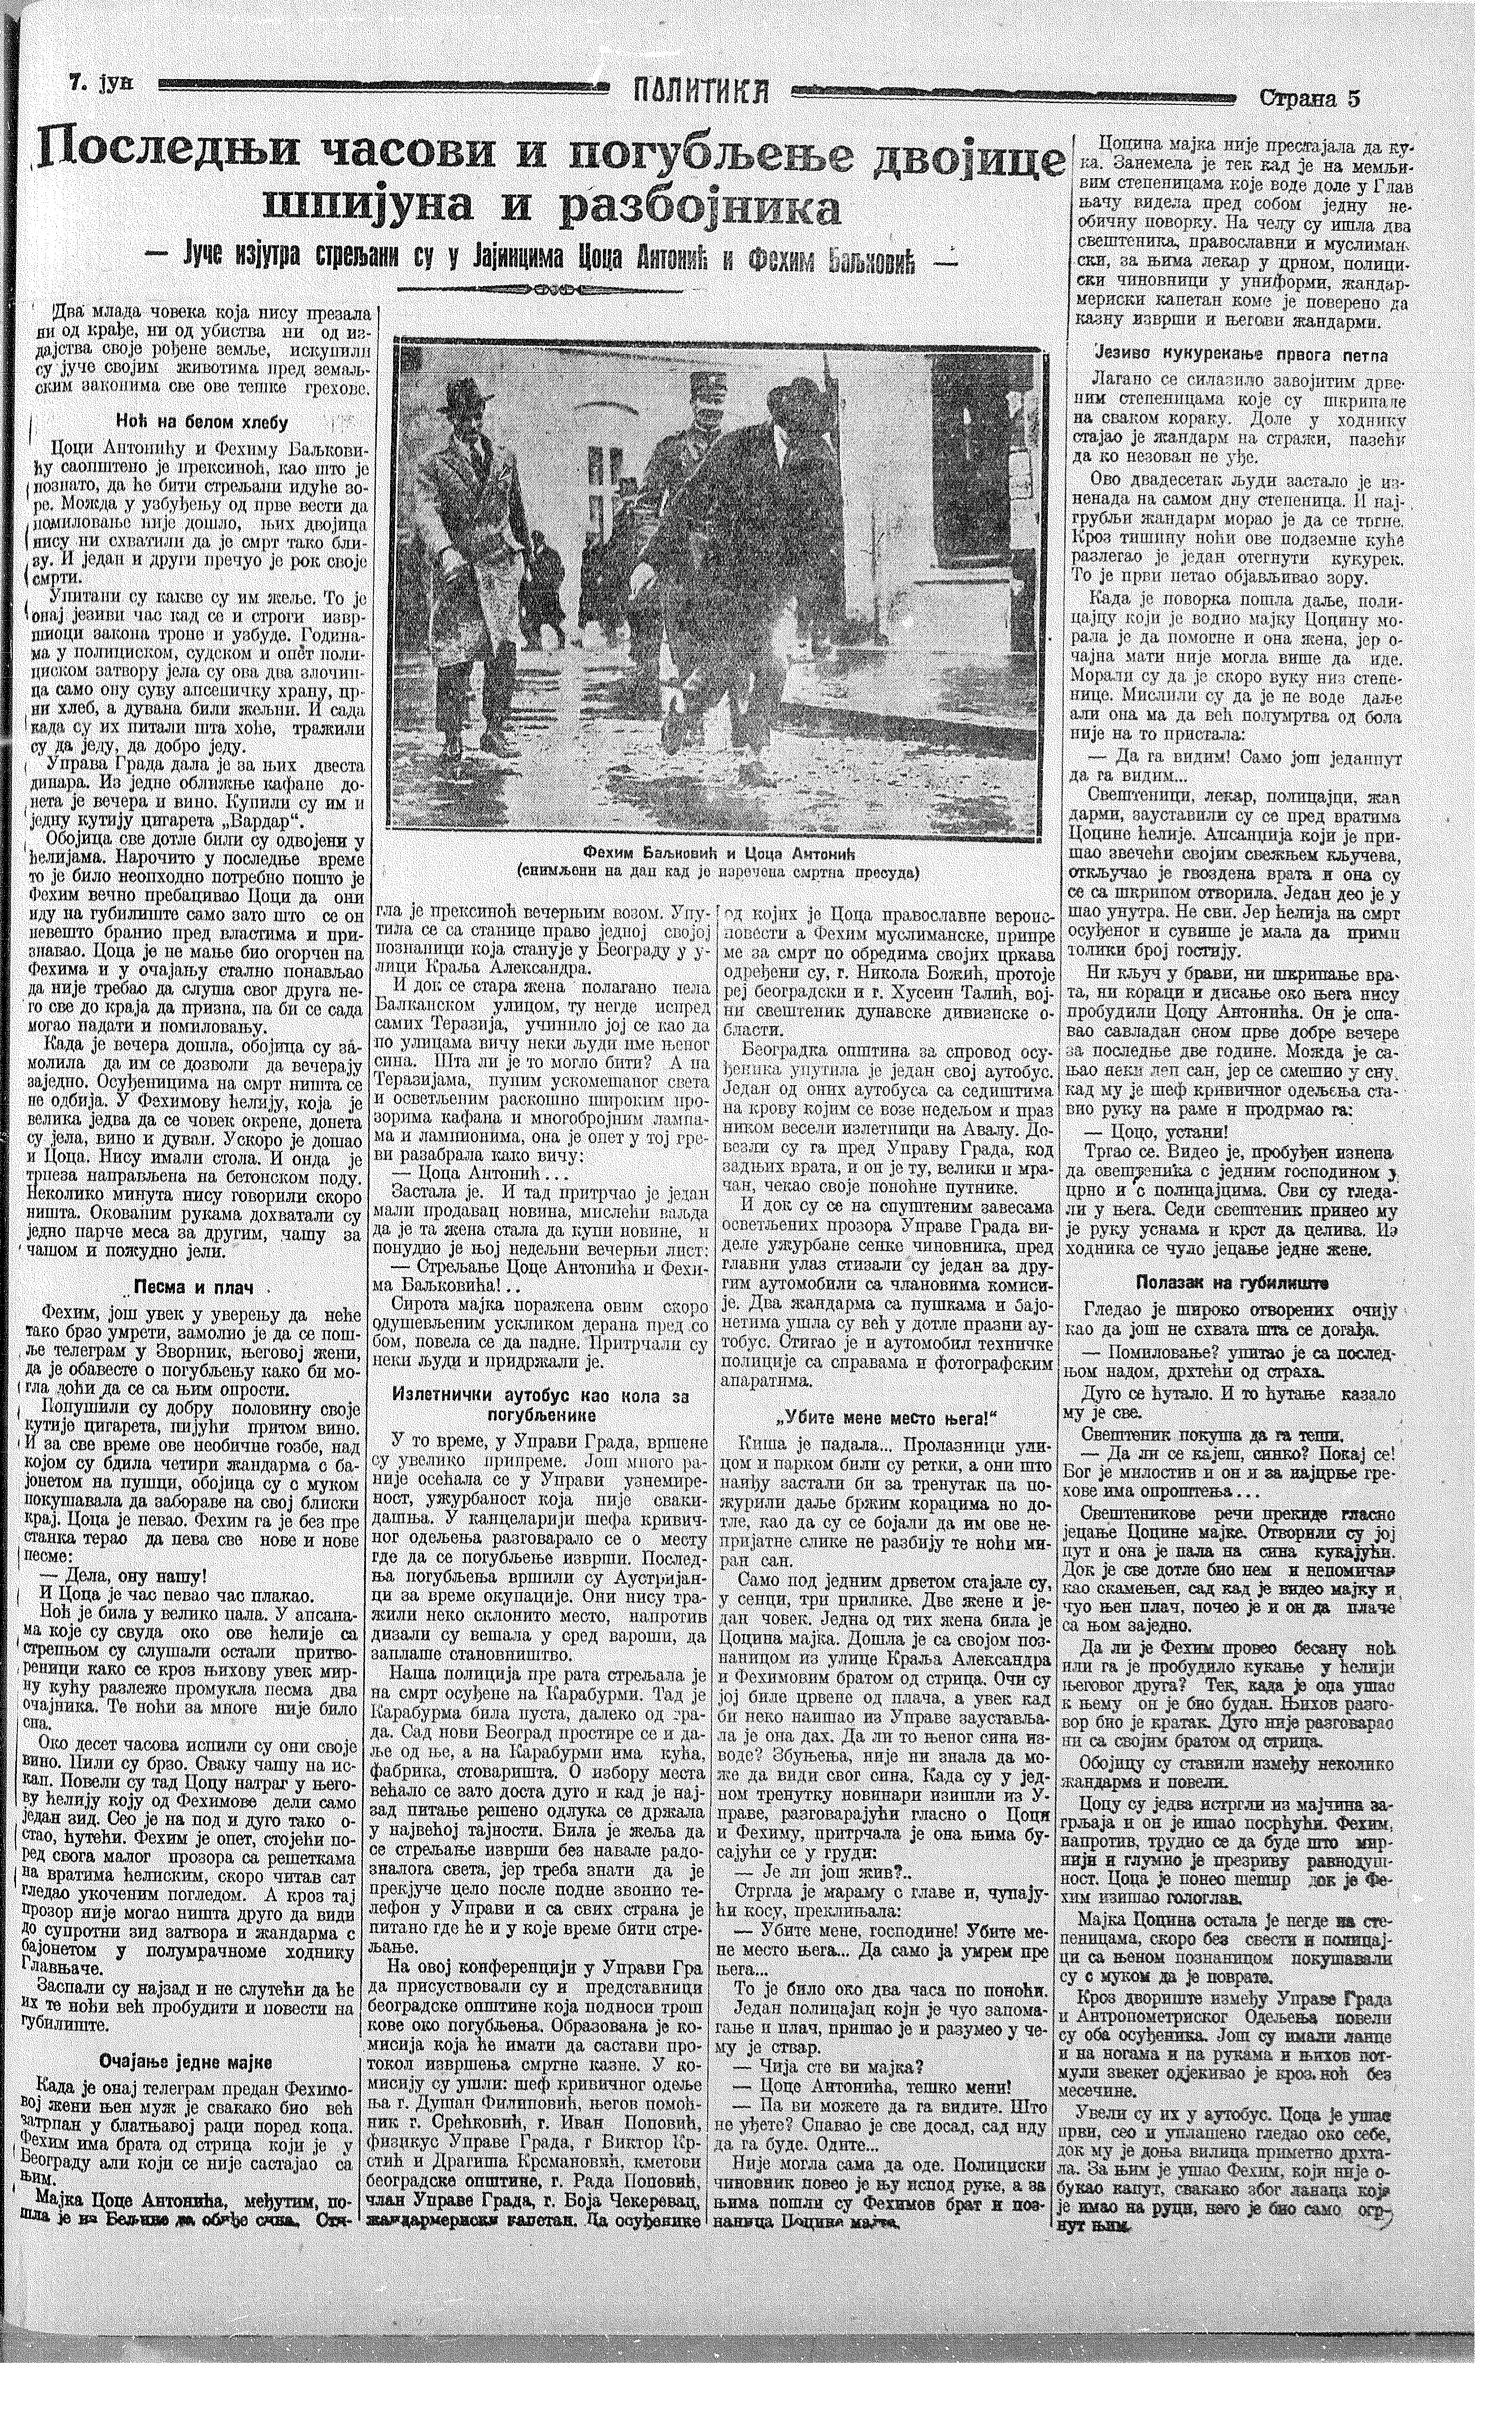 Poslednji časovi i pogubljenje, Politika, 07.06.1927.